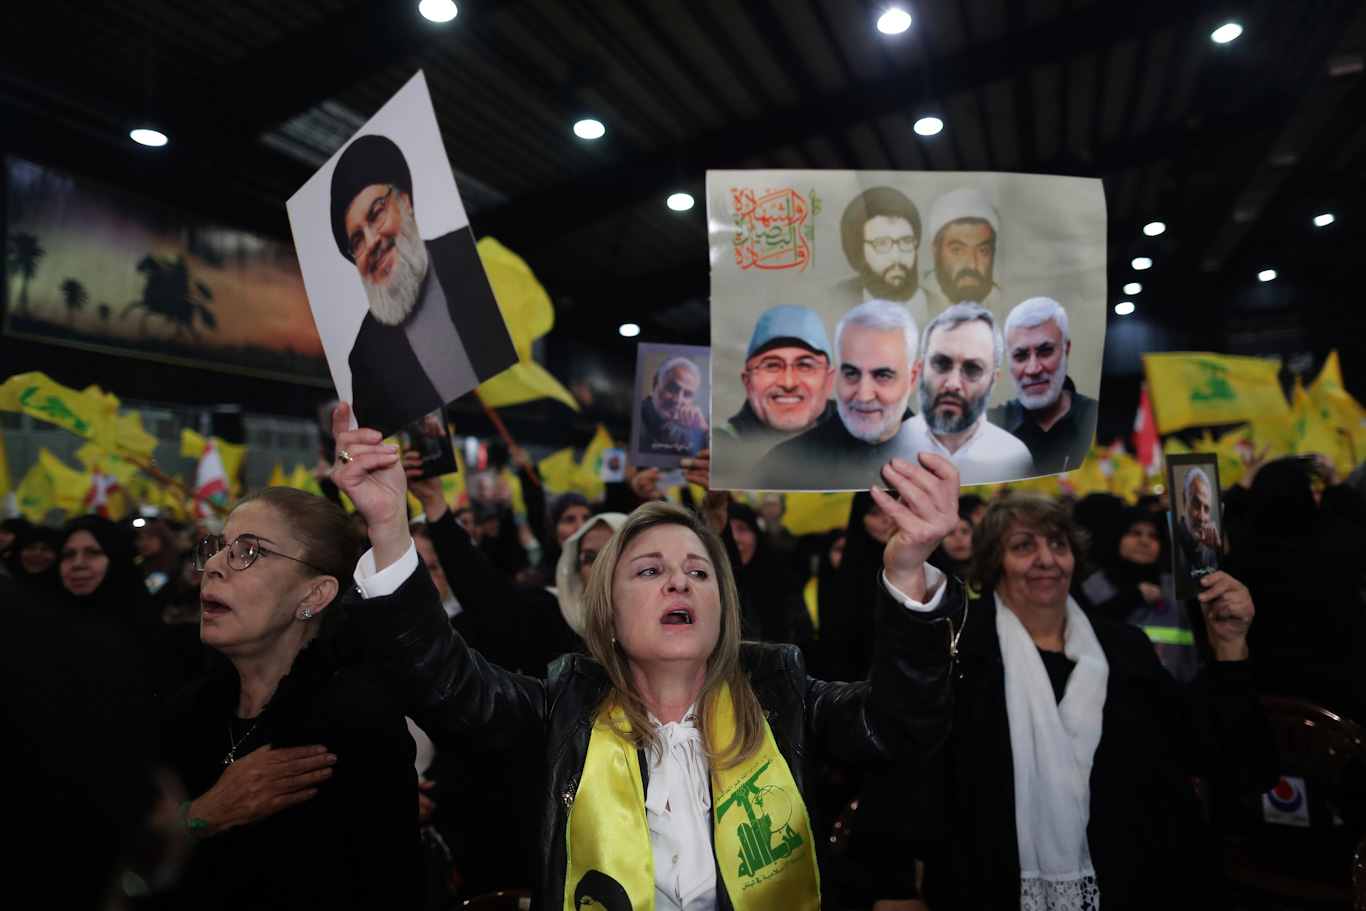 Christian Hezbollah supporter